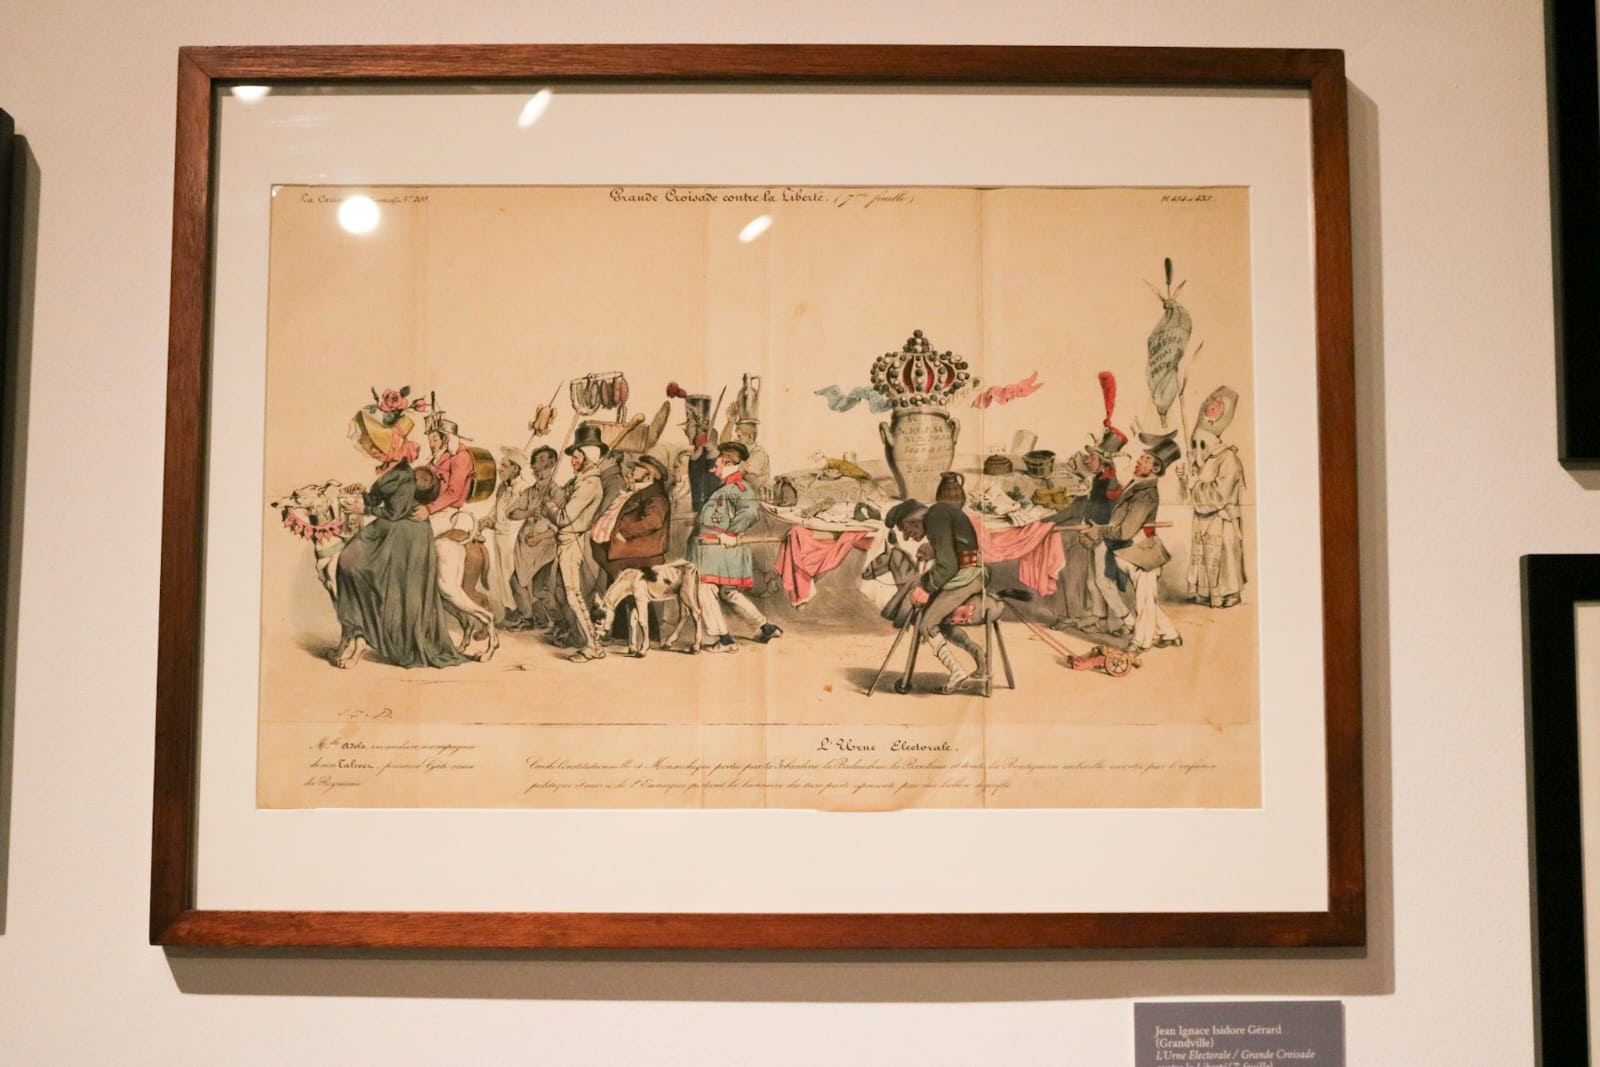 ¡Explosión de arte y rebeldía! La Revolución Mexicana en caricaturas y revistas satíricas en el Museo del Estanquillo